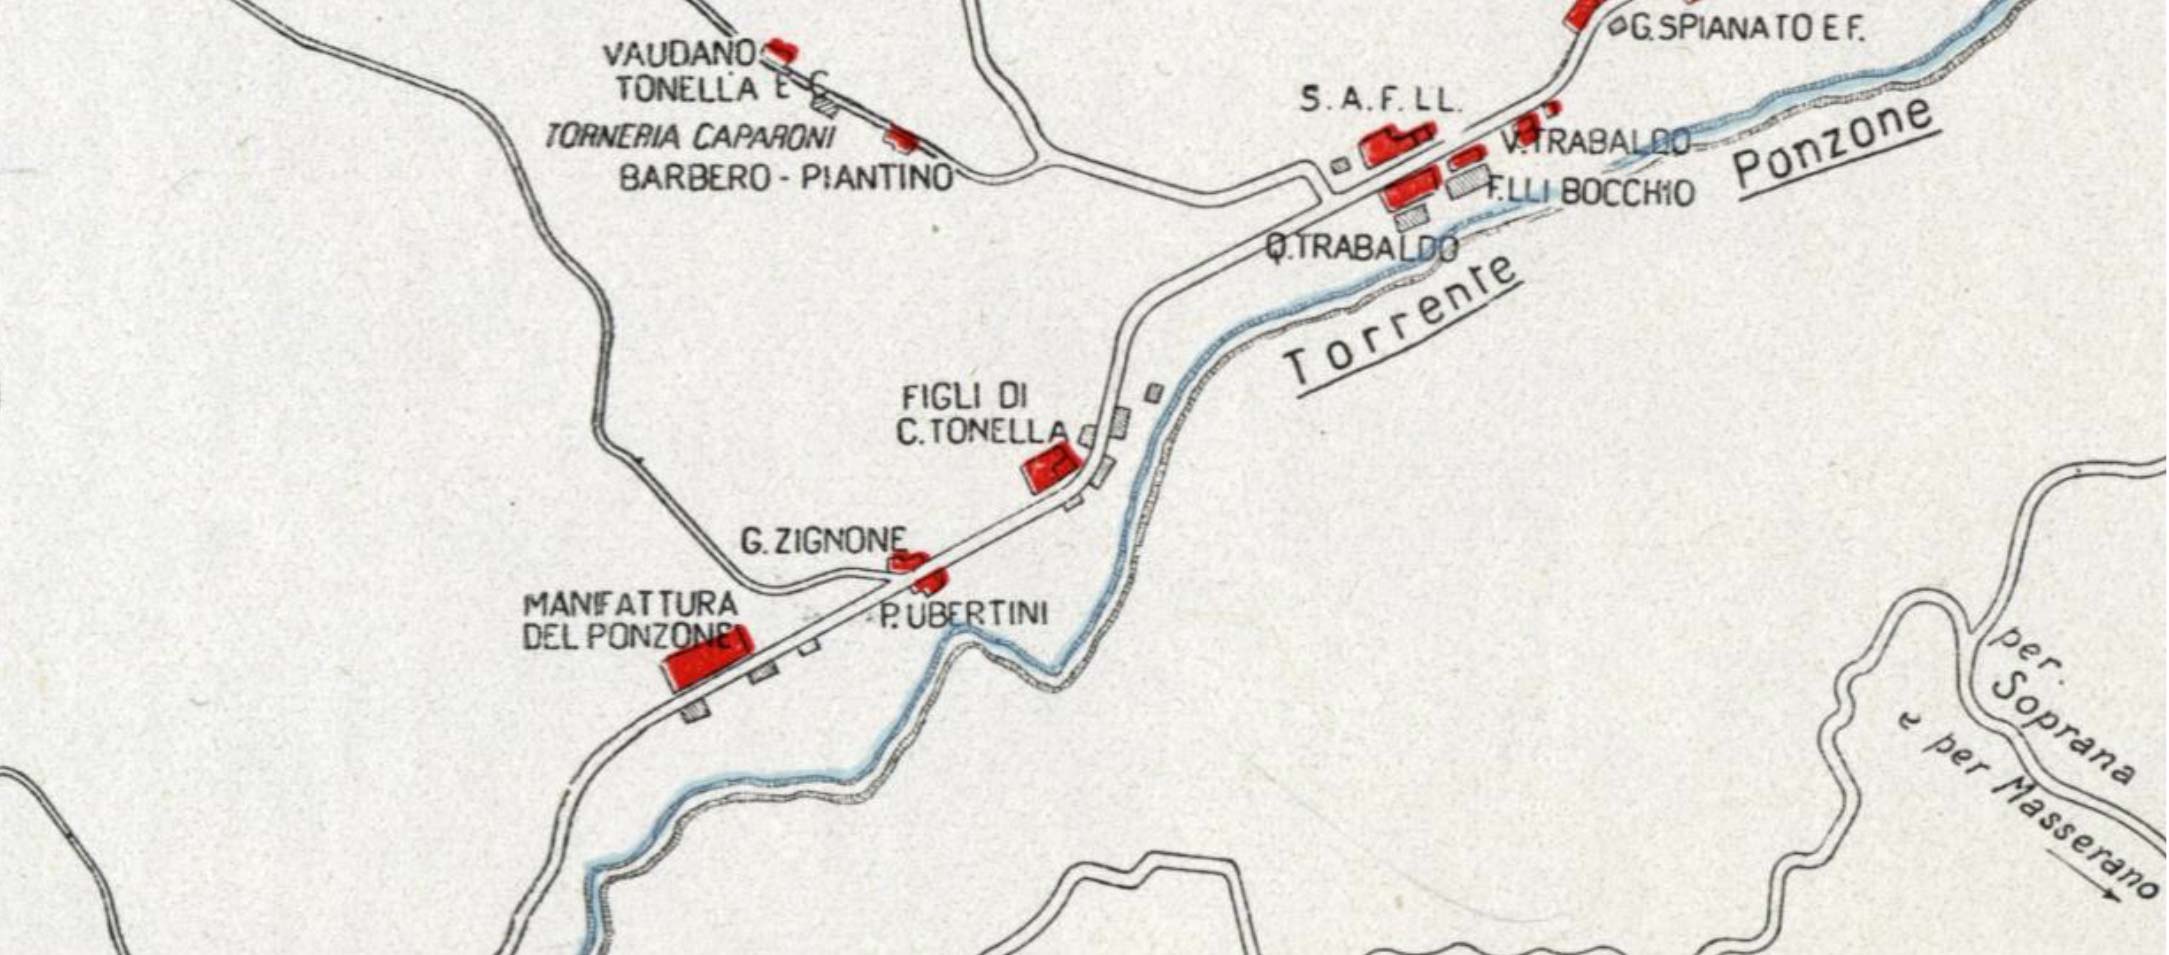 ポンツォーンネ渓流の端にあった工場を示す1934年版『毛織物年鑑』の地図の写真